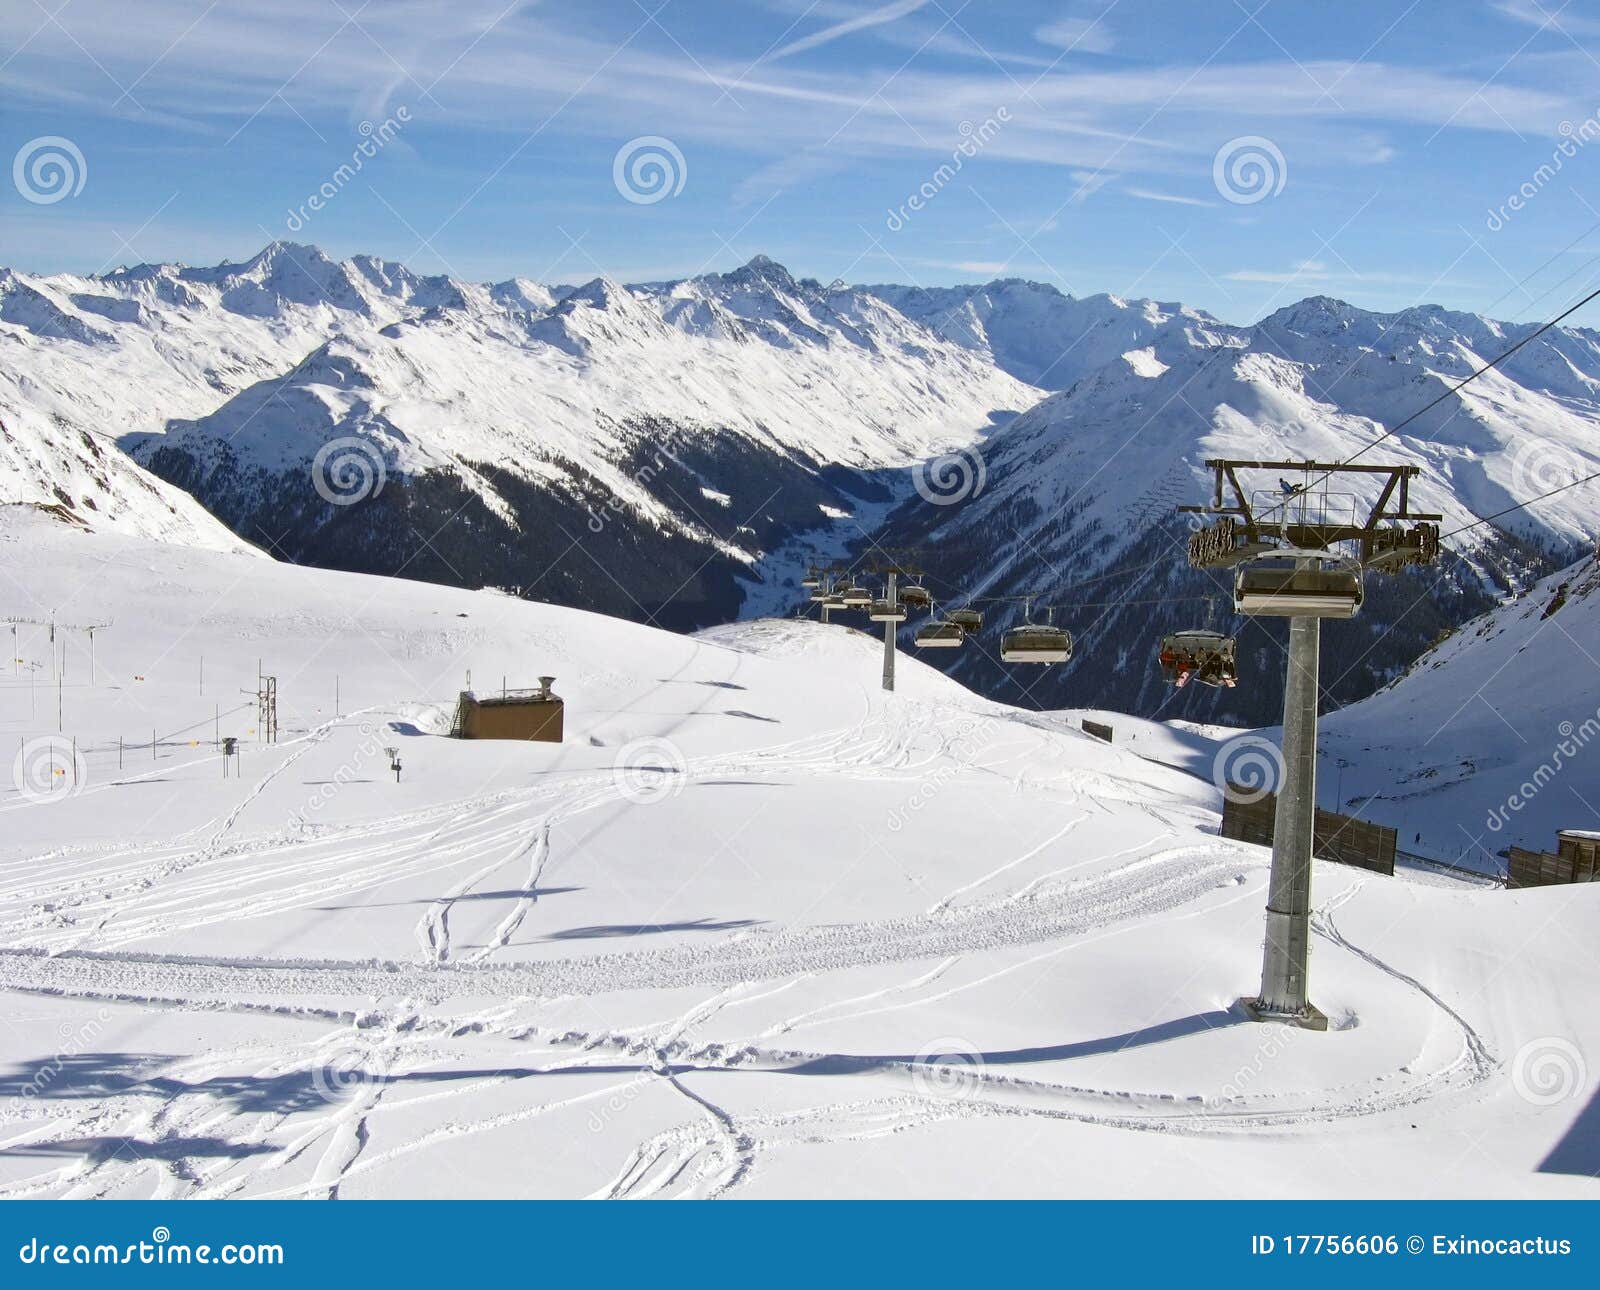 Davos Ski Resort Stock Photo Image 48783362 within How To Ski Davos